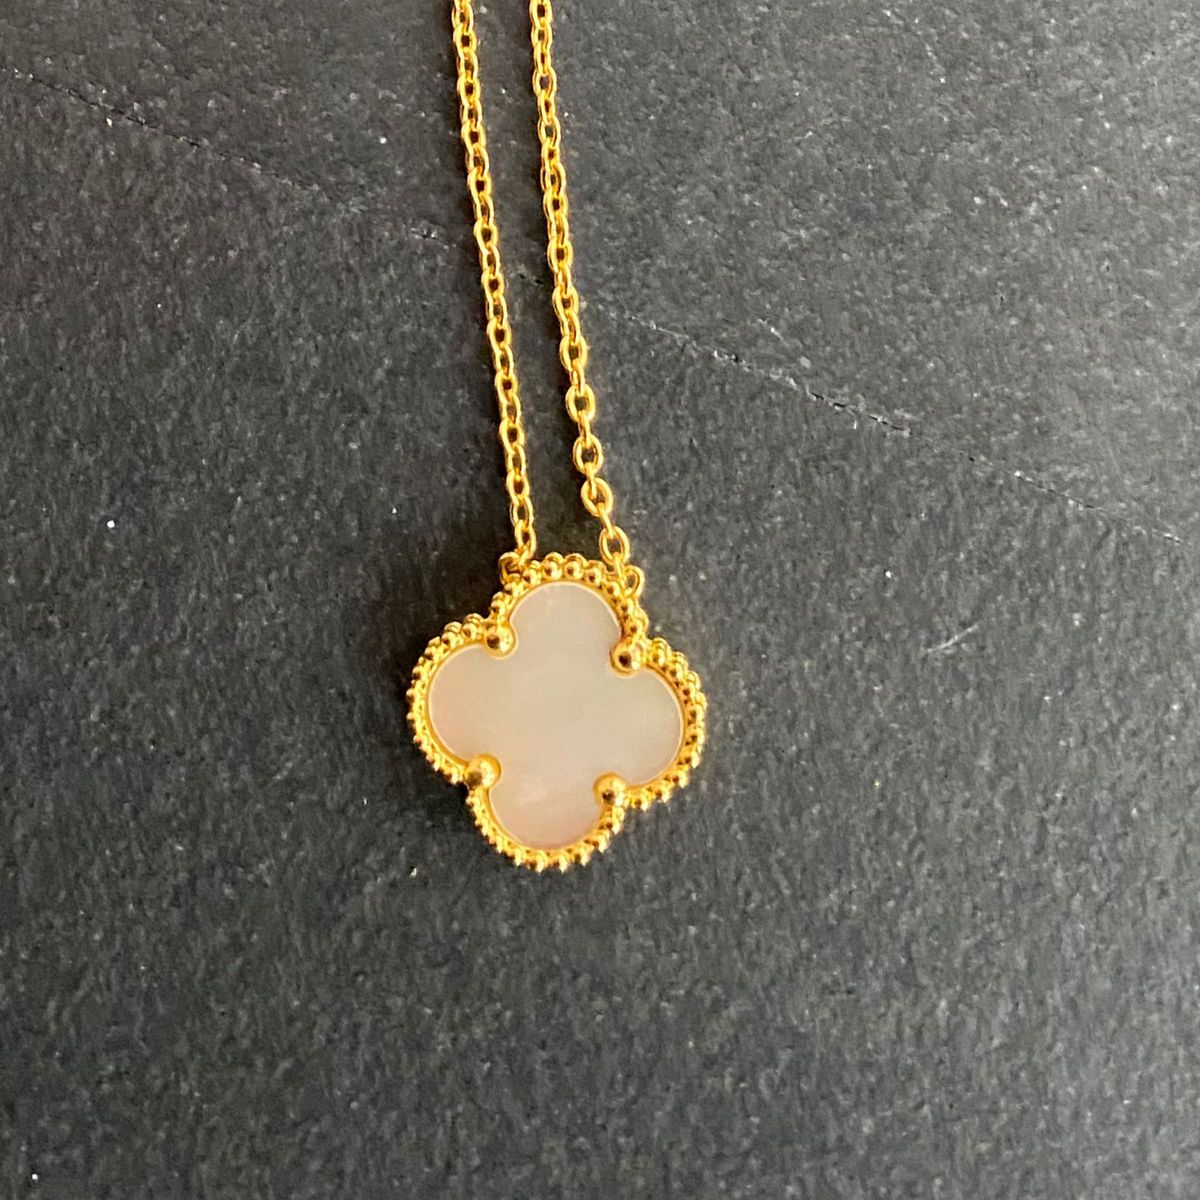 Four Leaf Clover necklace PerlWhite